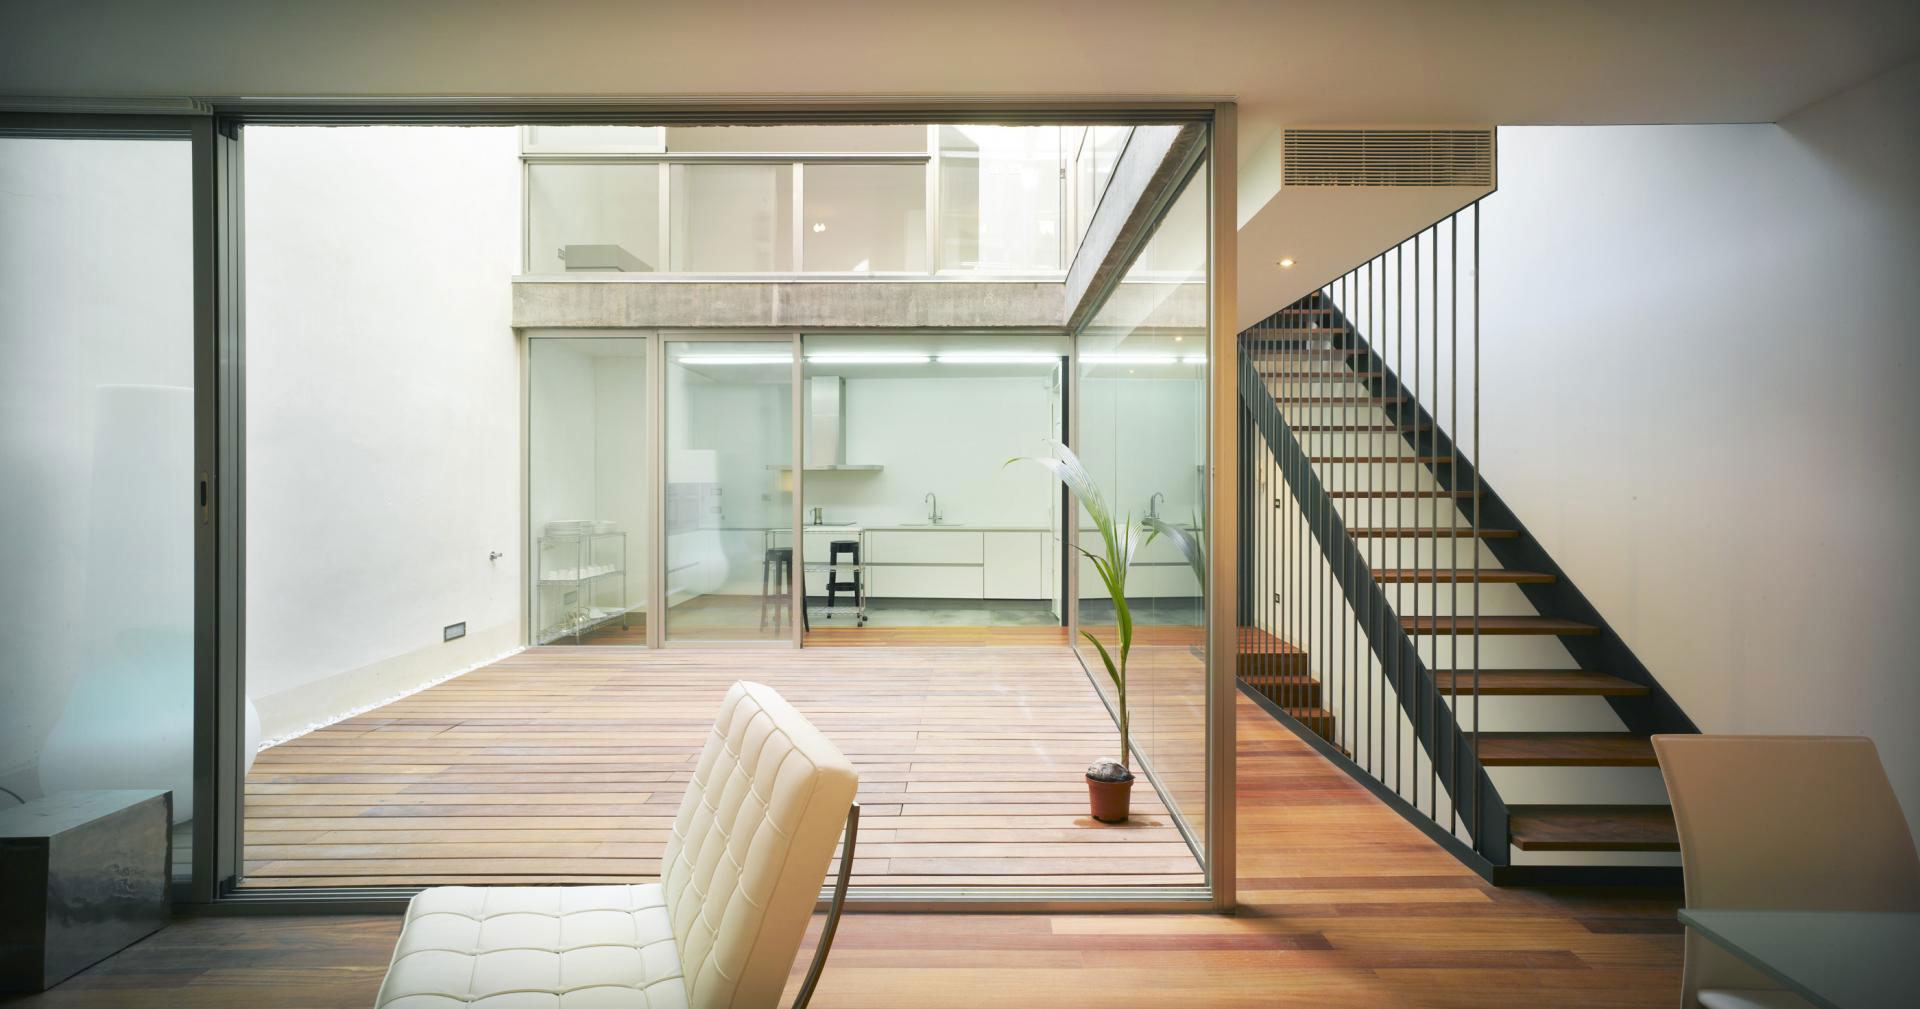 Креативный дизайн интерьера резиденции Vivienda Teresa от конструкторов бюро Rocamora Arquitectura